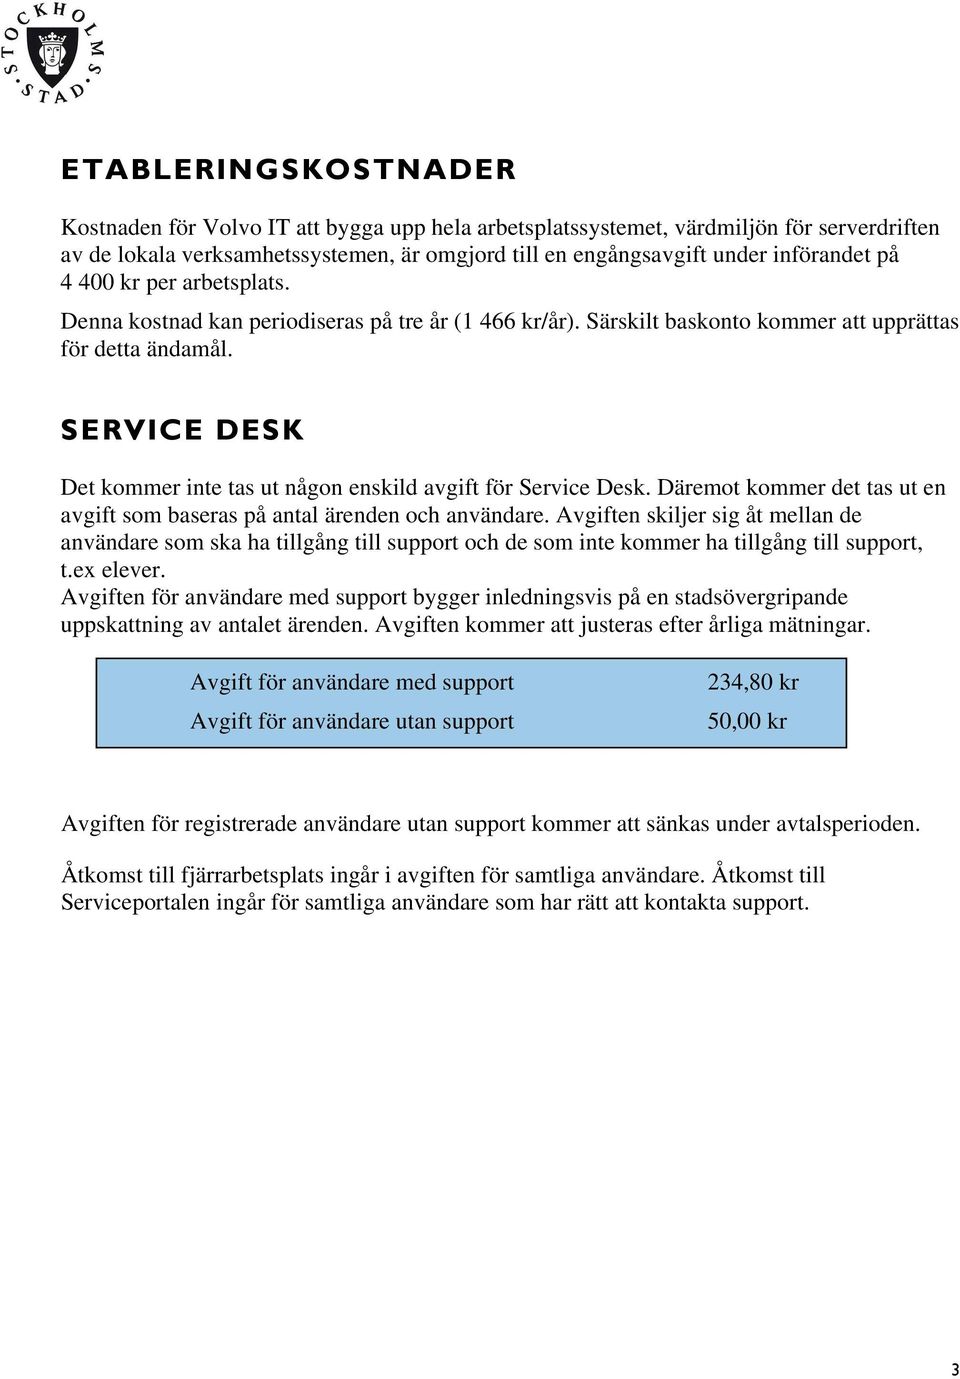 SERVICE DESK Det kommer inte tas ut någon enskild avgift för Service Desk. Däremot kommer det tas ut en avgift som baseras på antal ärenden och användare.